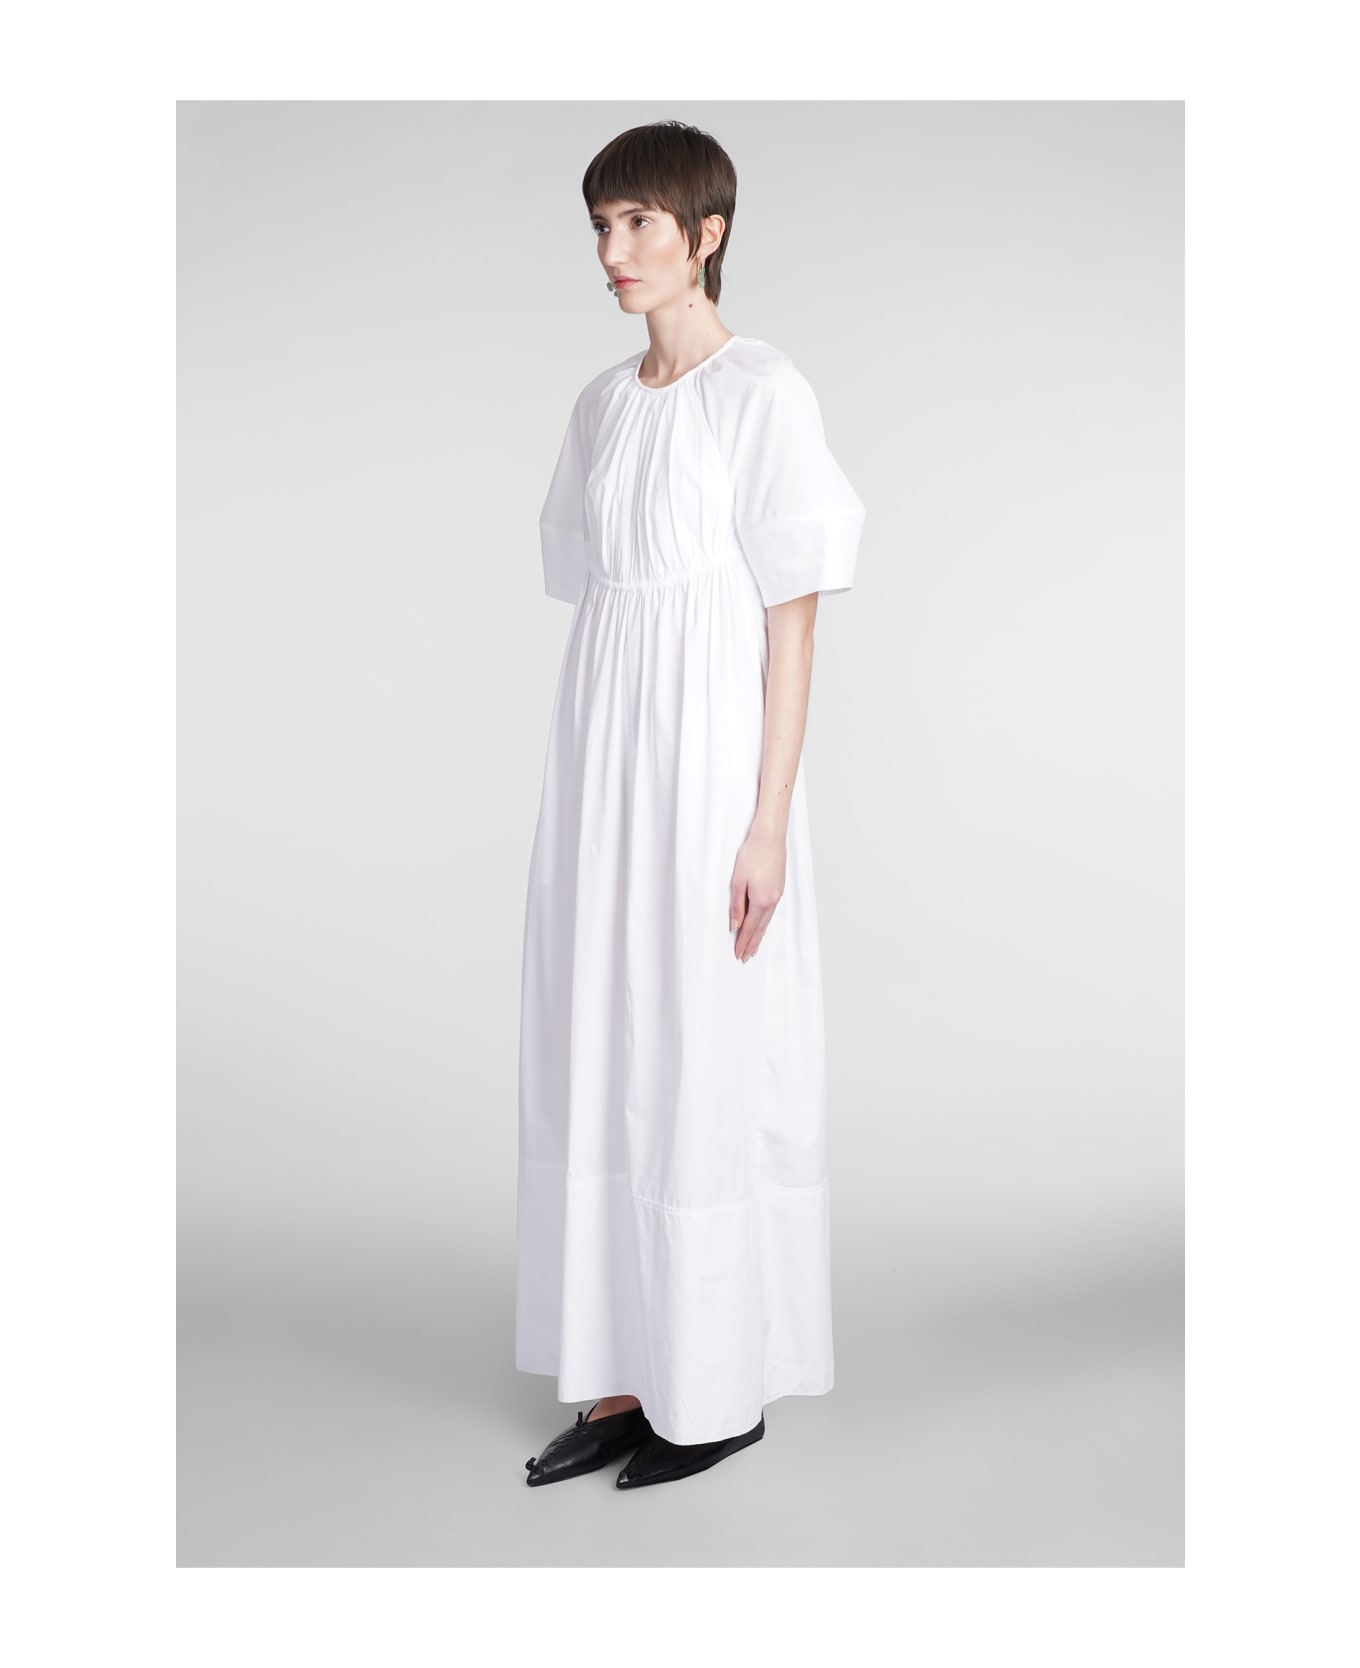 Jil Sander Dress In White Cotton - white